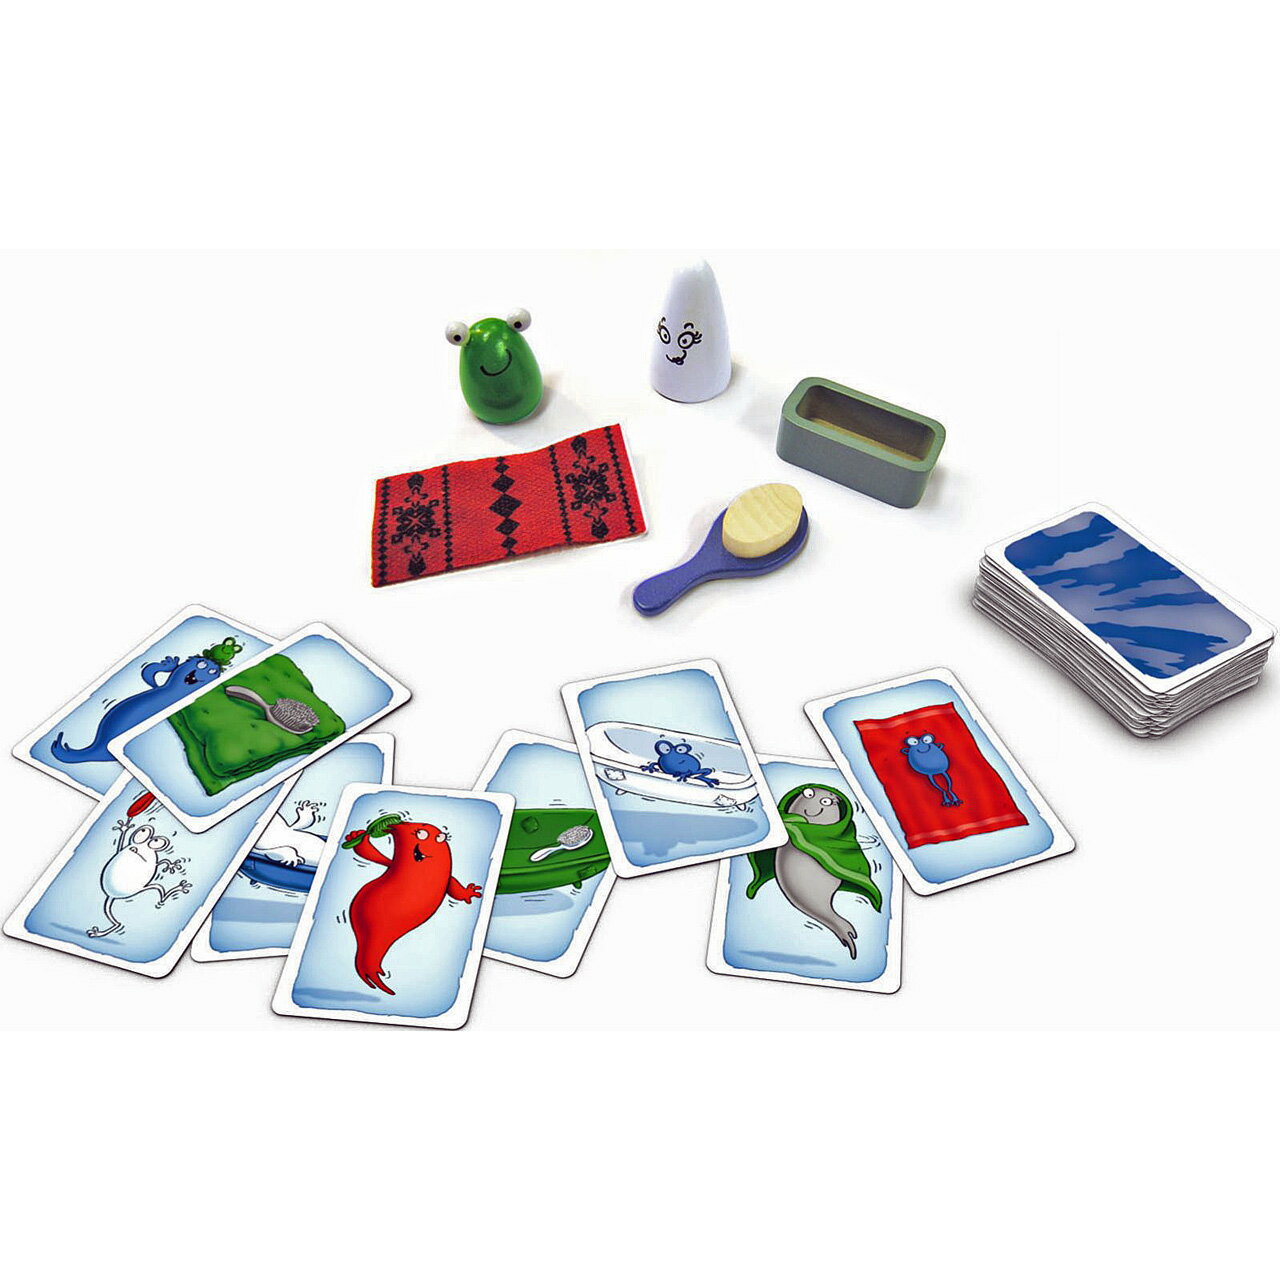 おばけキャッチ2 日本語版 (ボードゲーム カードゲーム) 8歳以上 20-30分程度 2-8人用